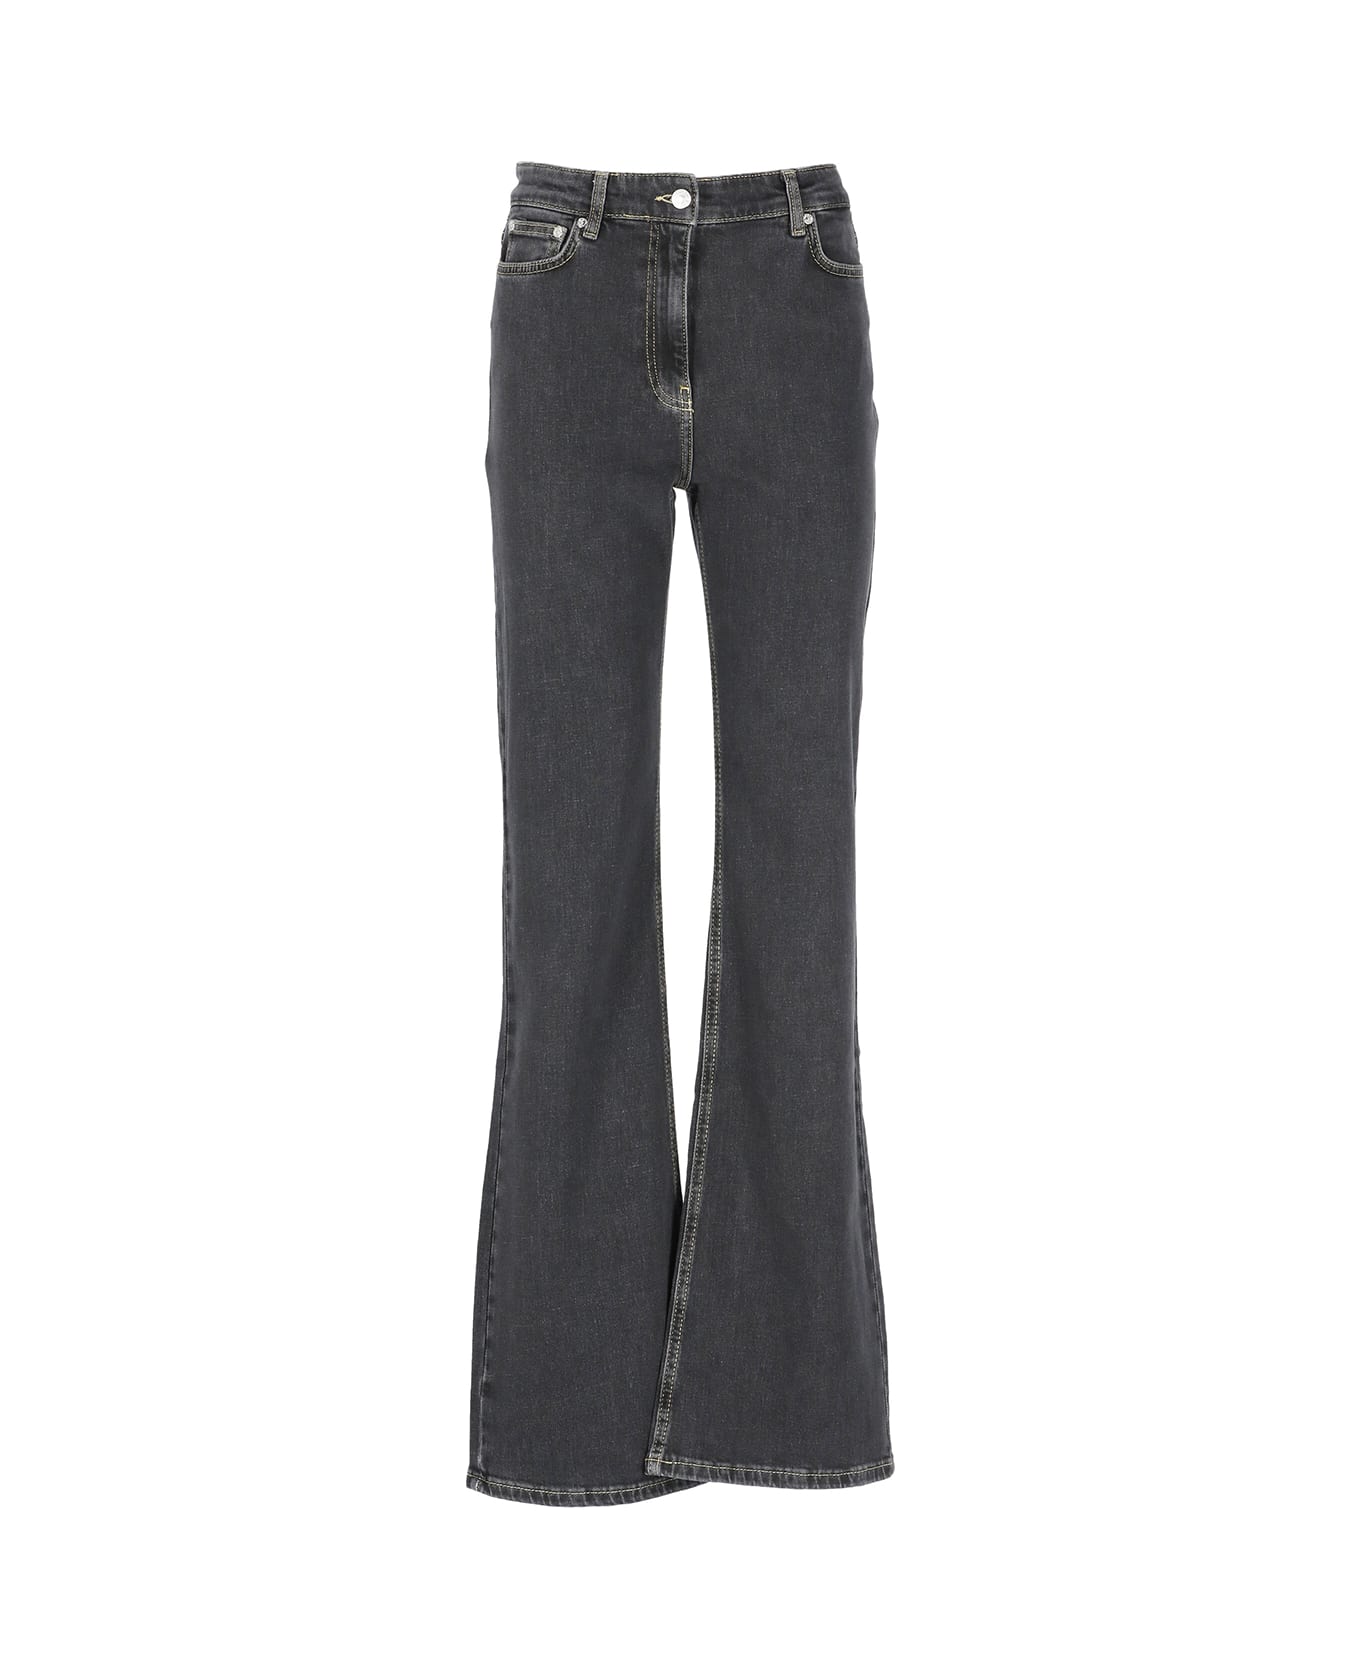 M05CH1N0 Jeans Cotton Jeans - Black